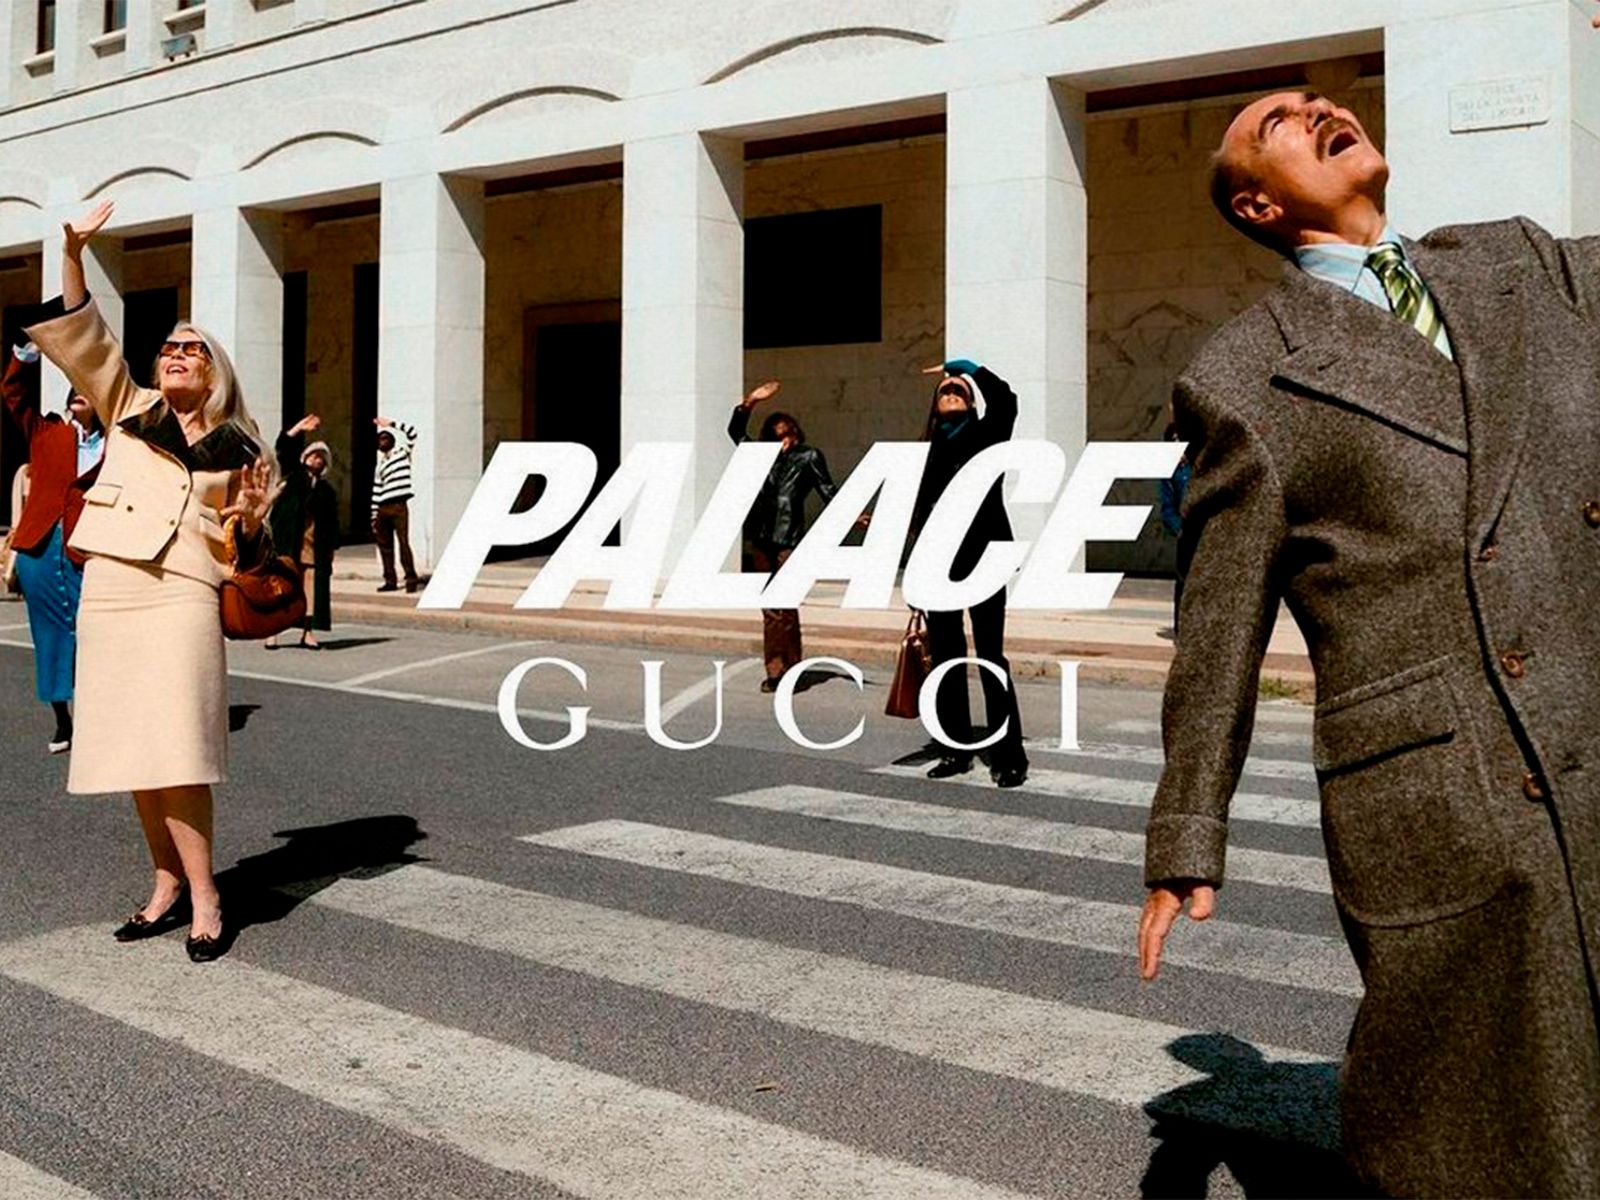 Primeros detalles de la colaboración entre Palace y Gucci